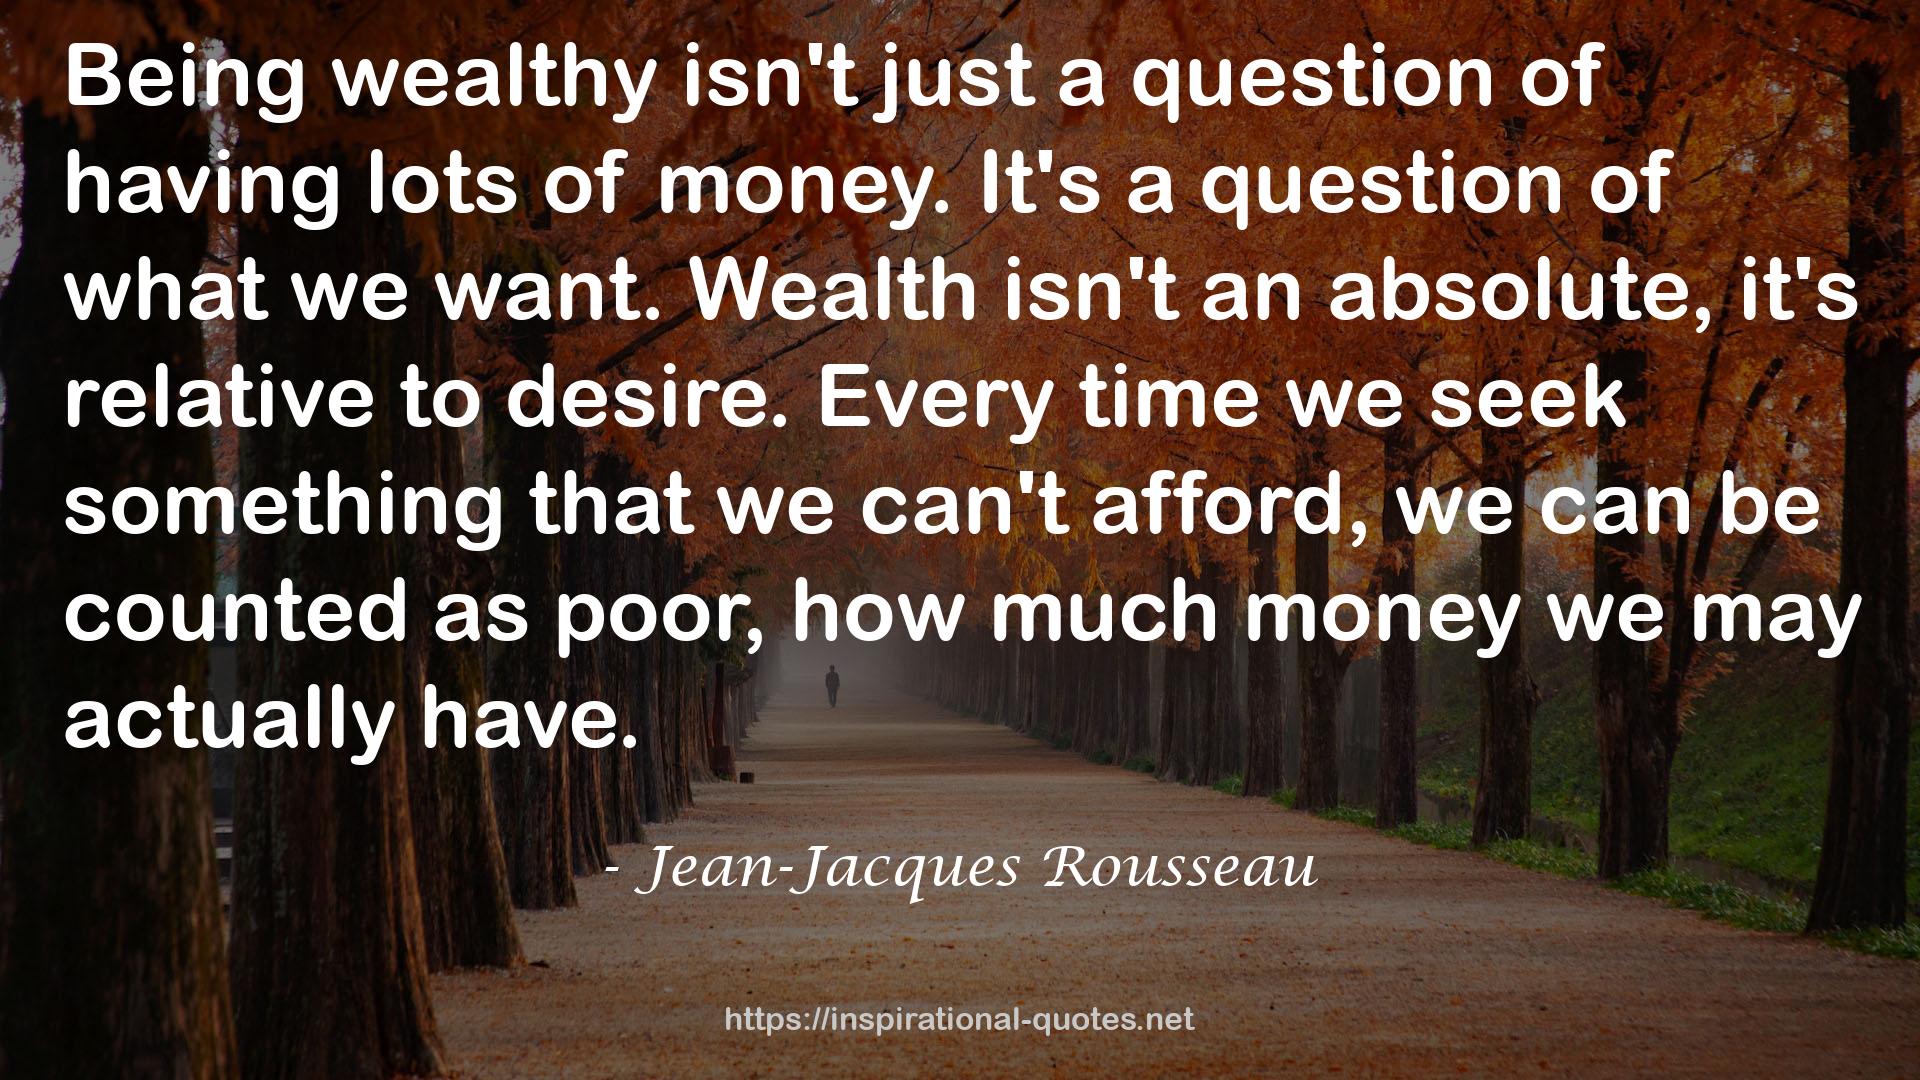 Jean-Jacques Rousseau QUOTES